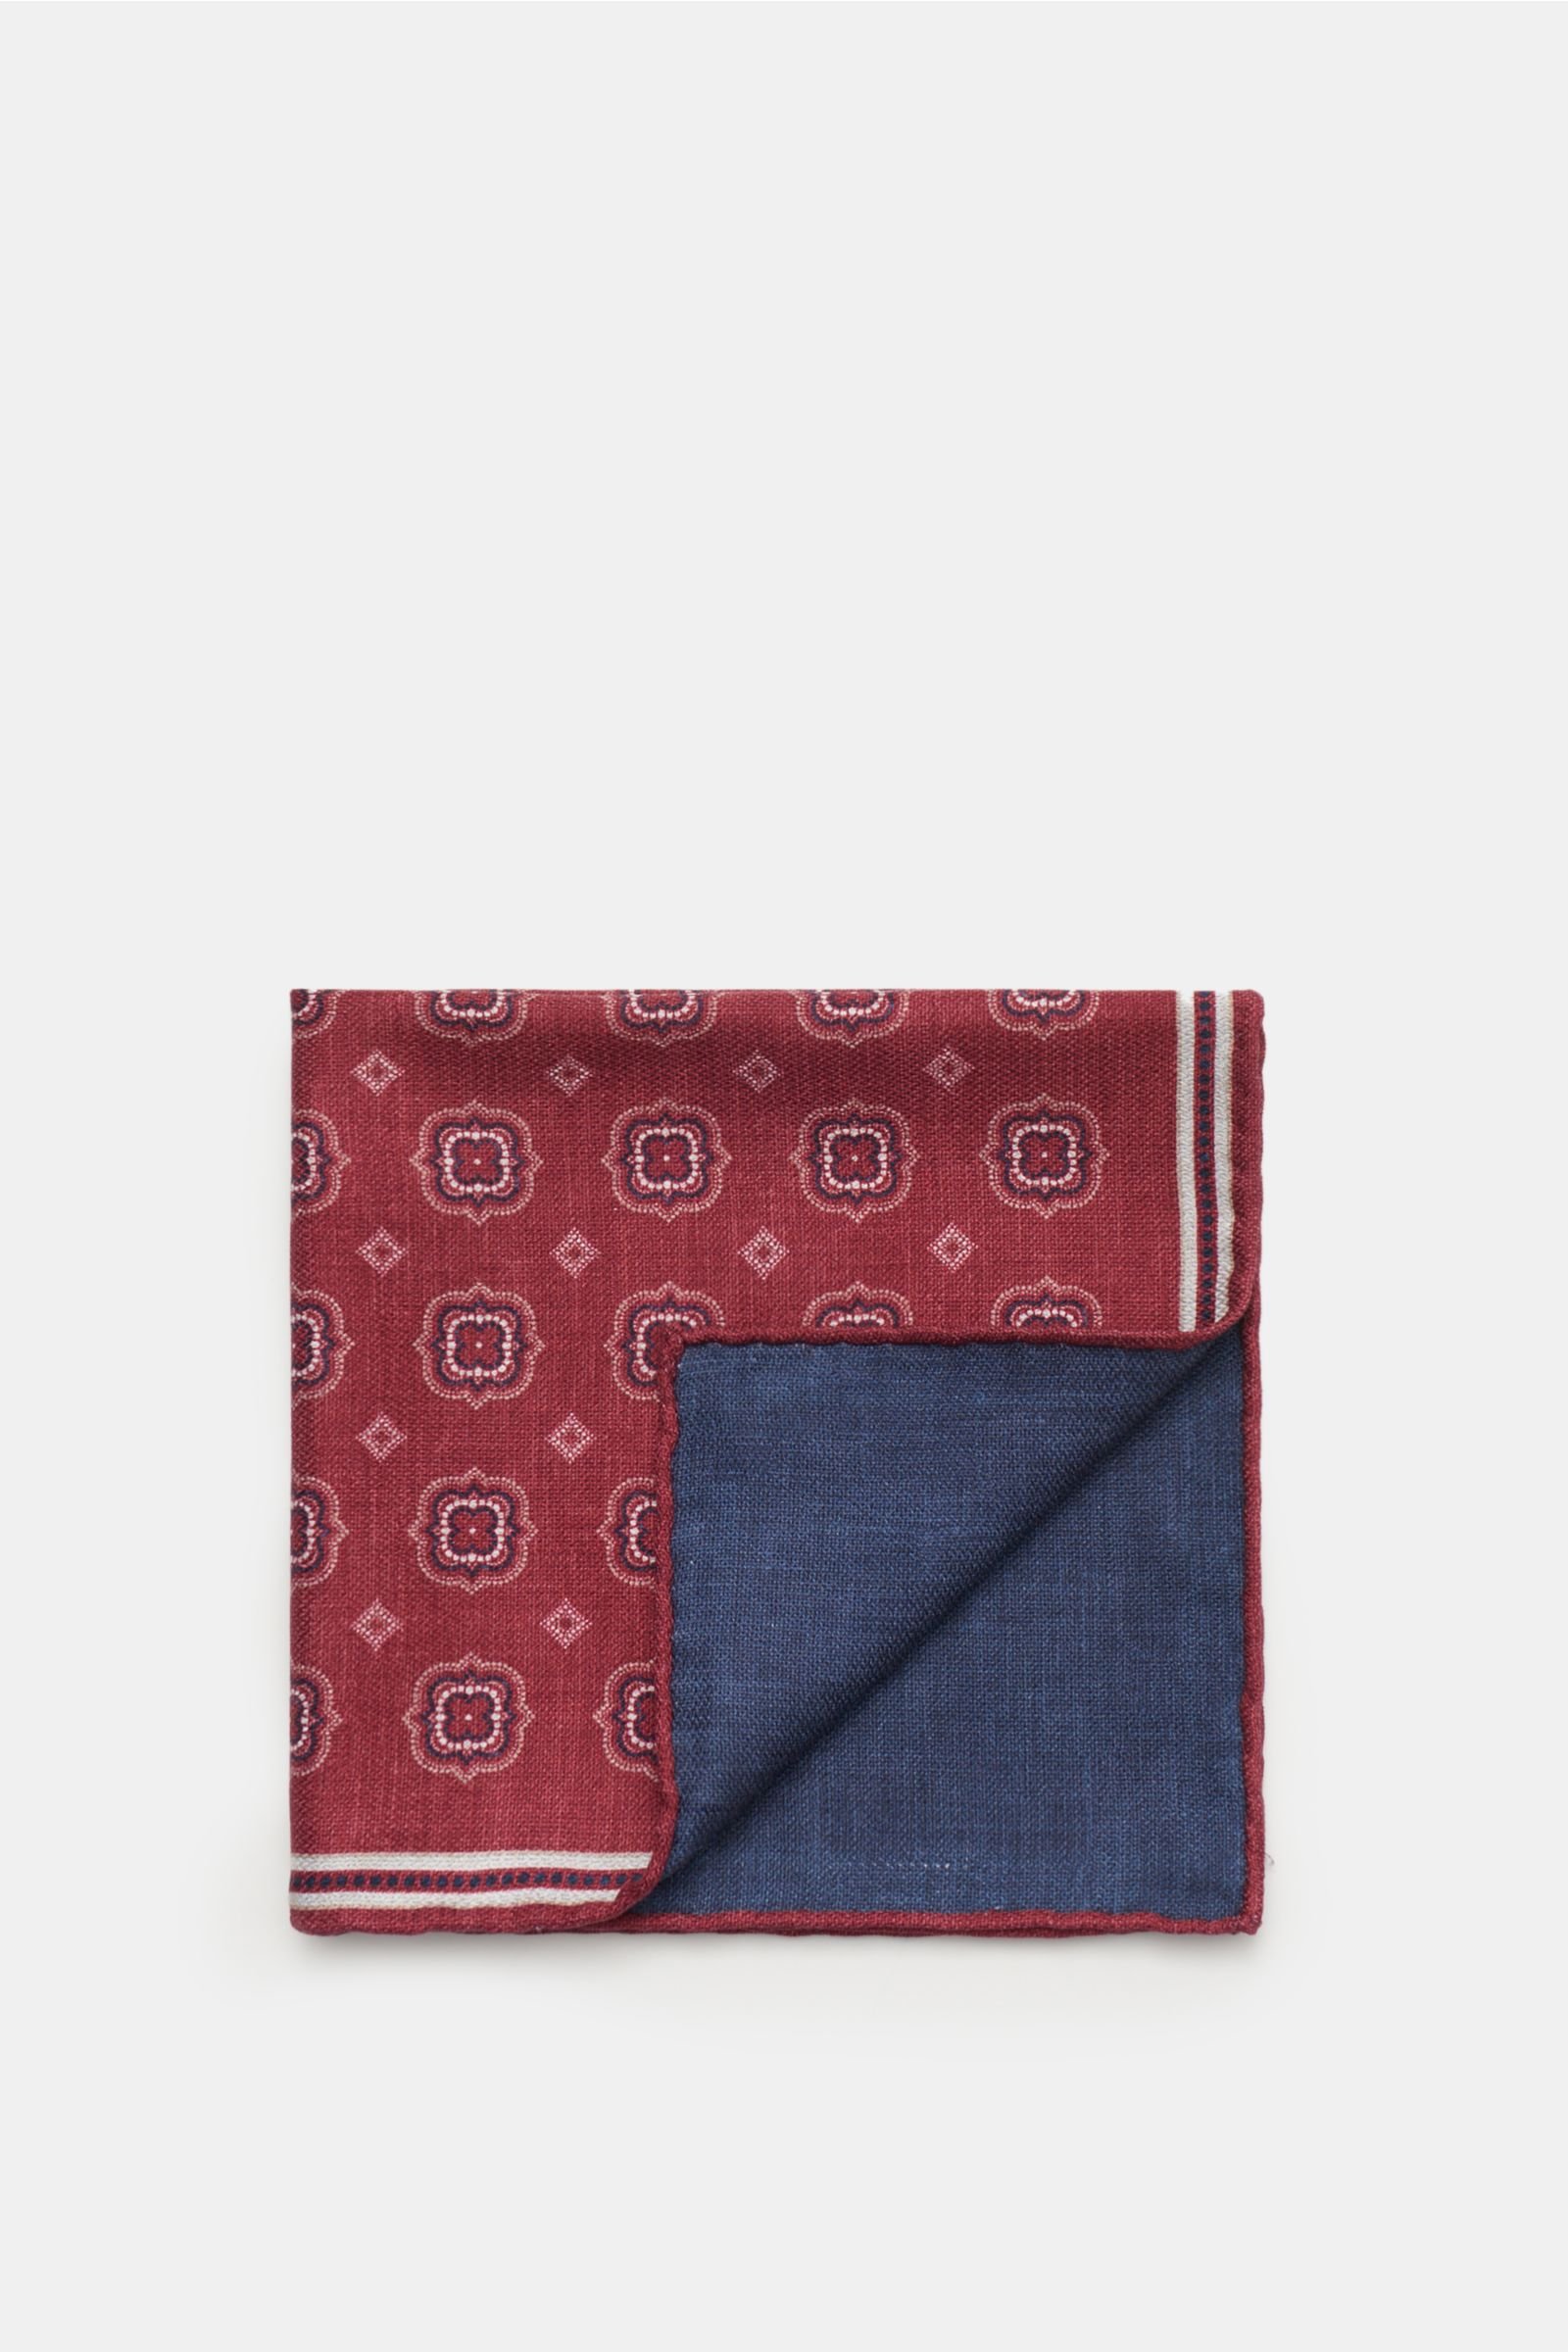 Pocket square burgundy patterned